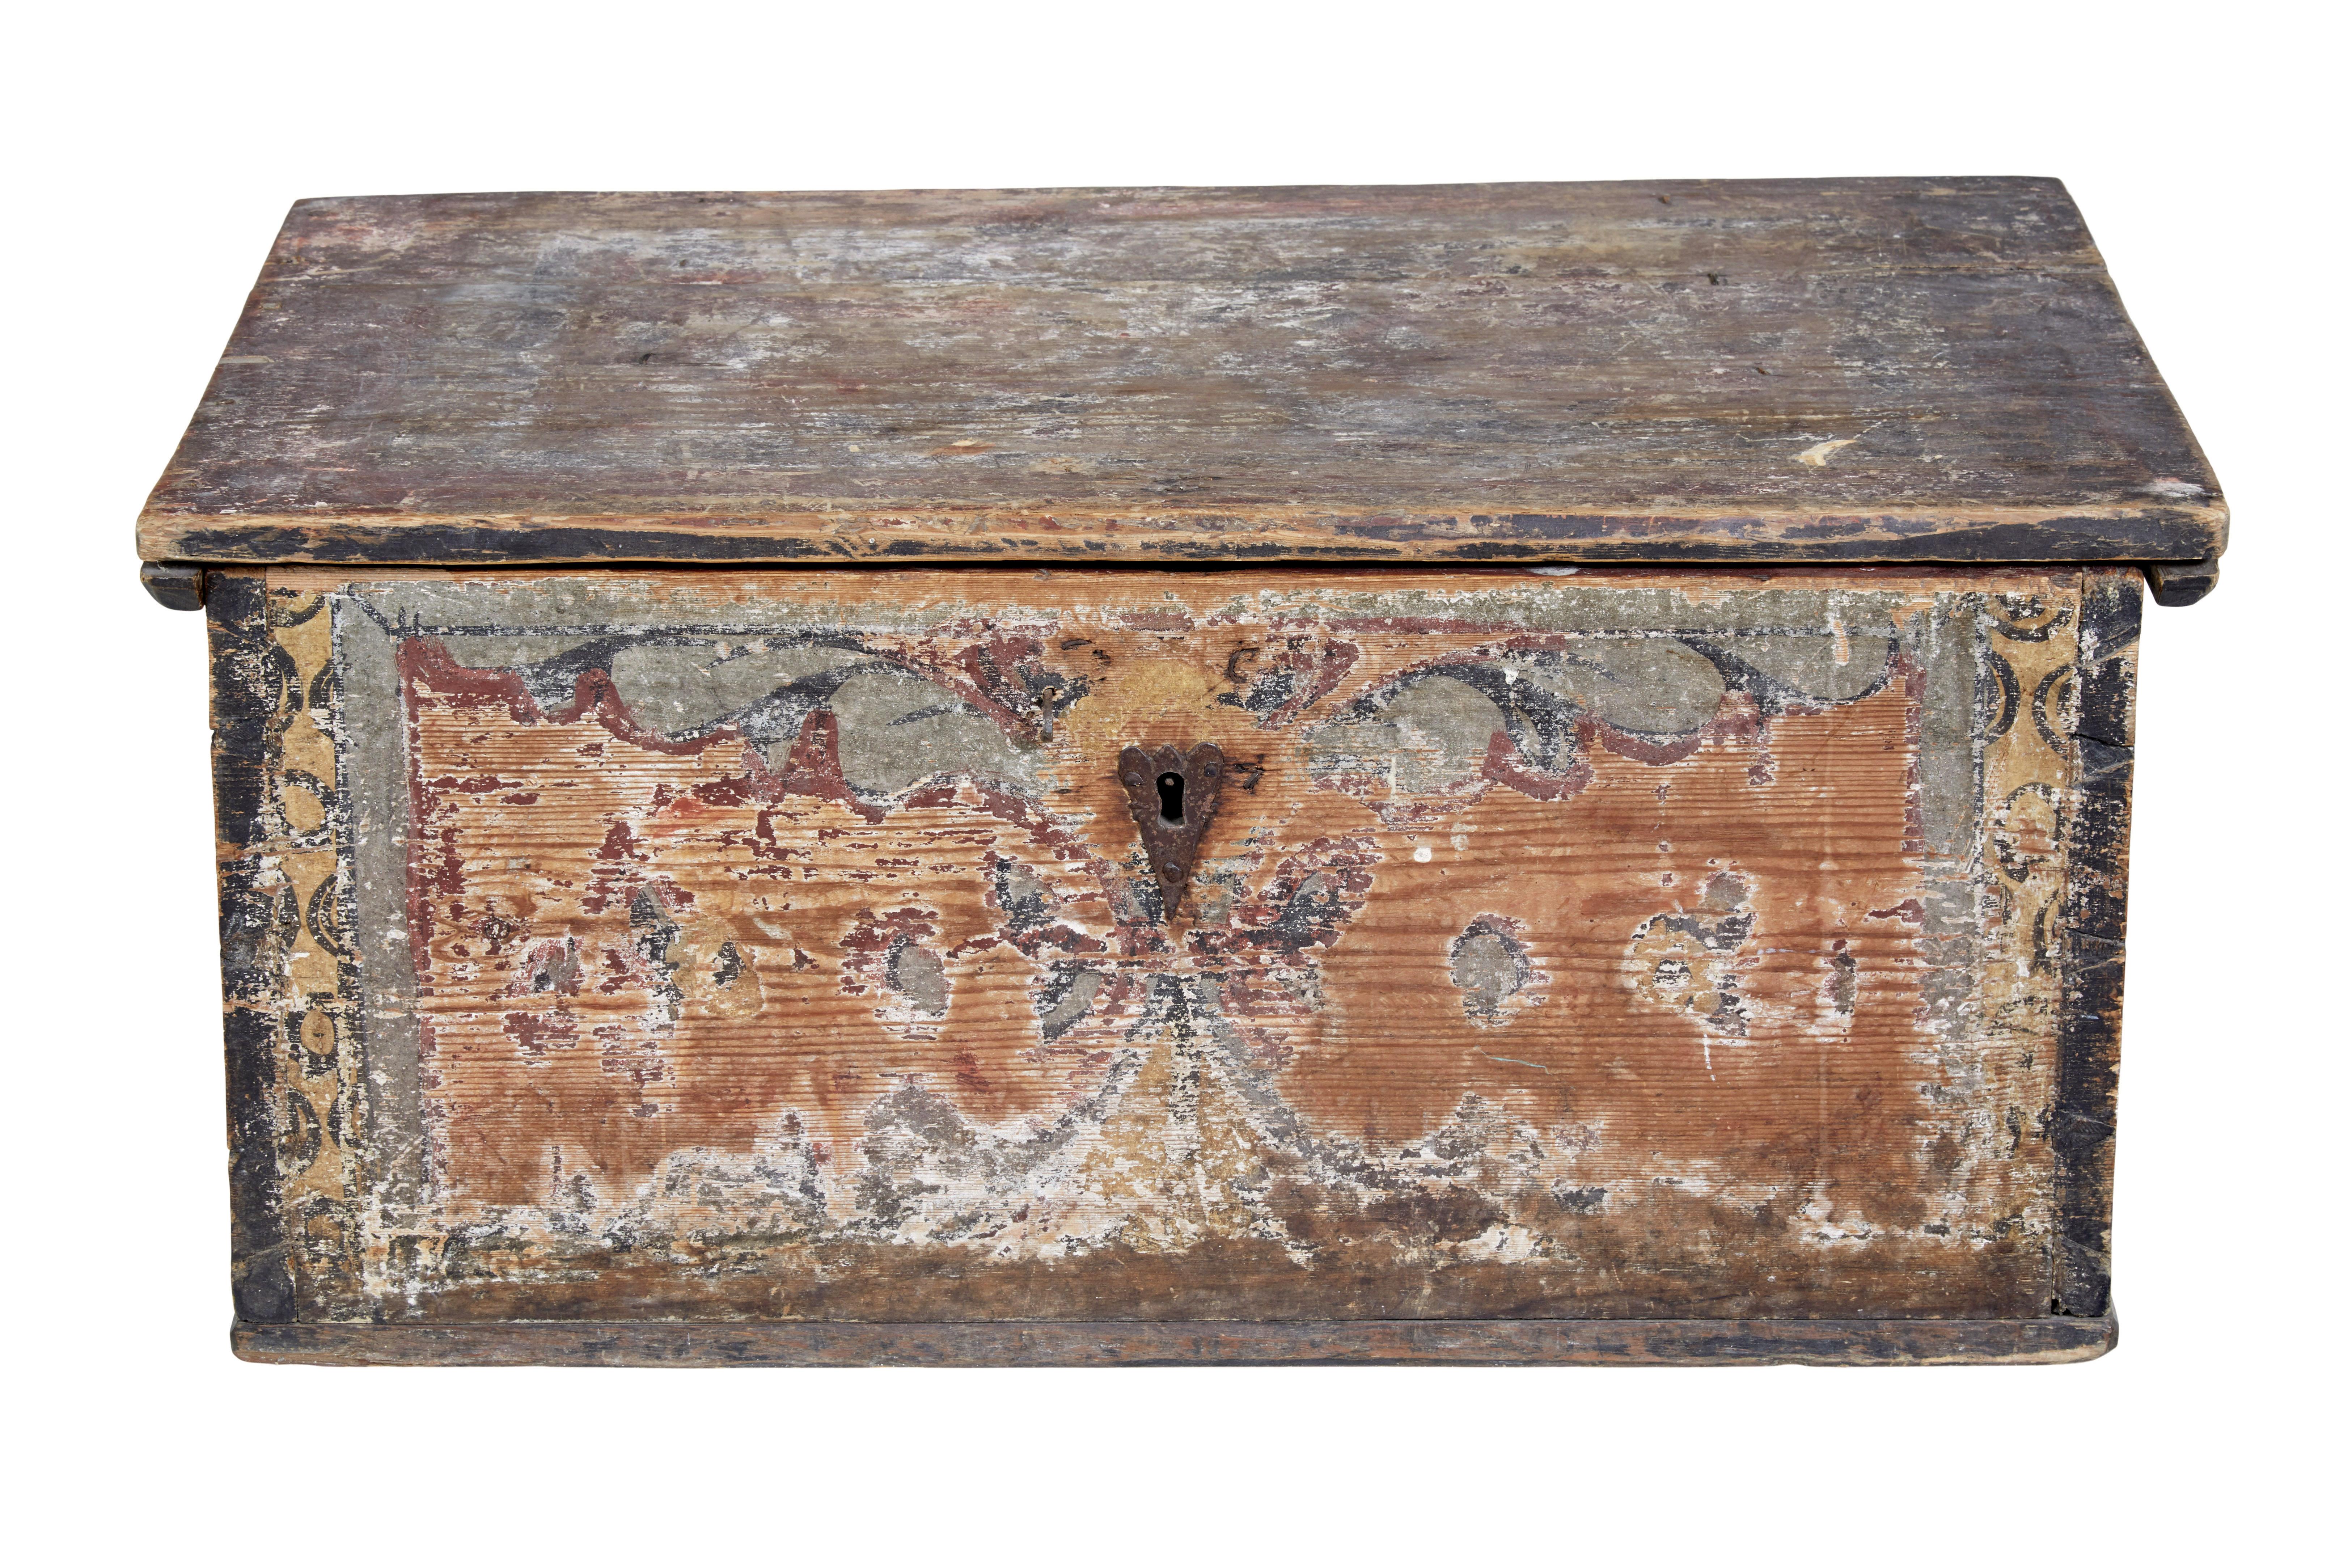 Mitte des 18. Jahrhunderts handbemalte traditionelle schwedische Truhe/Kiste, um 1750.

Wunderschöne traditionelle schwedische Kiste, handbemalt in der Originalfarbe.   Auf allen Seiten mit rostroten, grauen und gelben Fahnen verziert.  Komplett mit